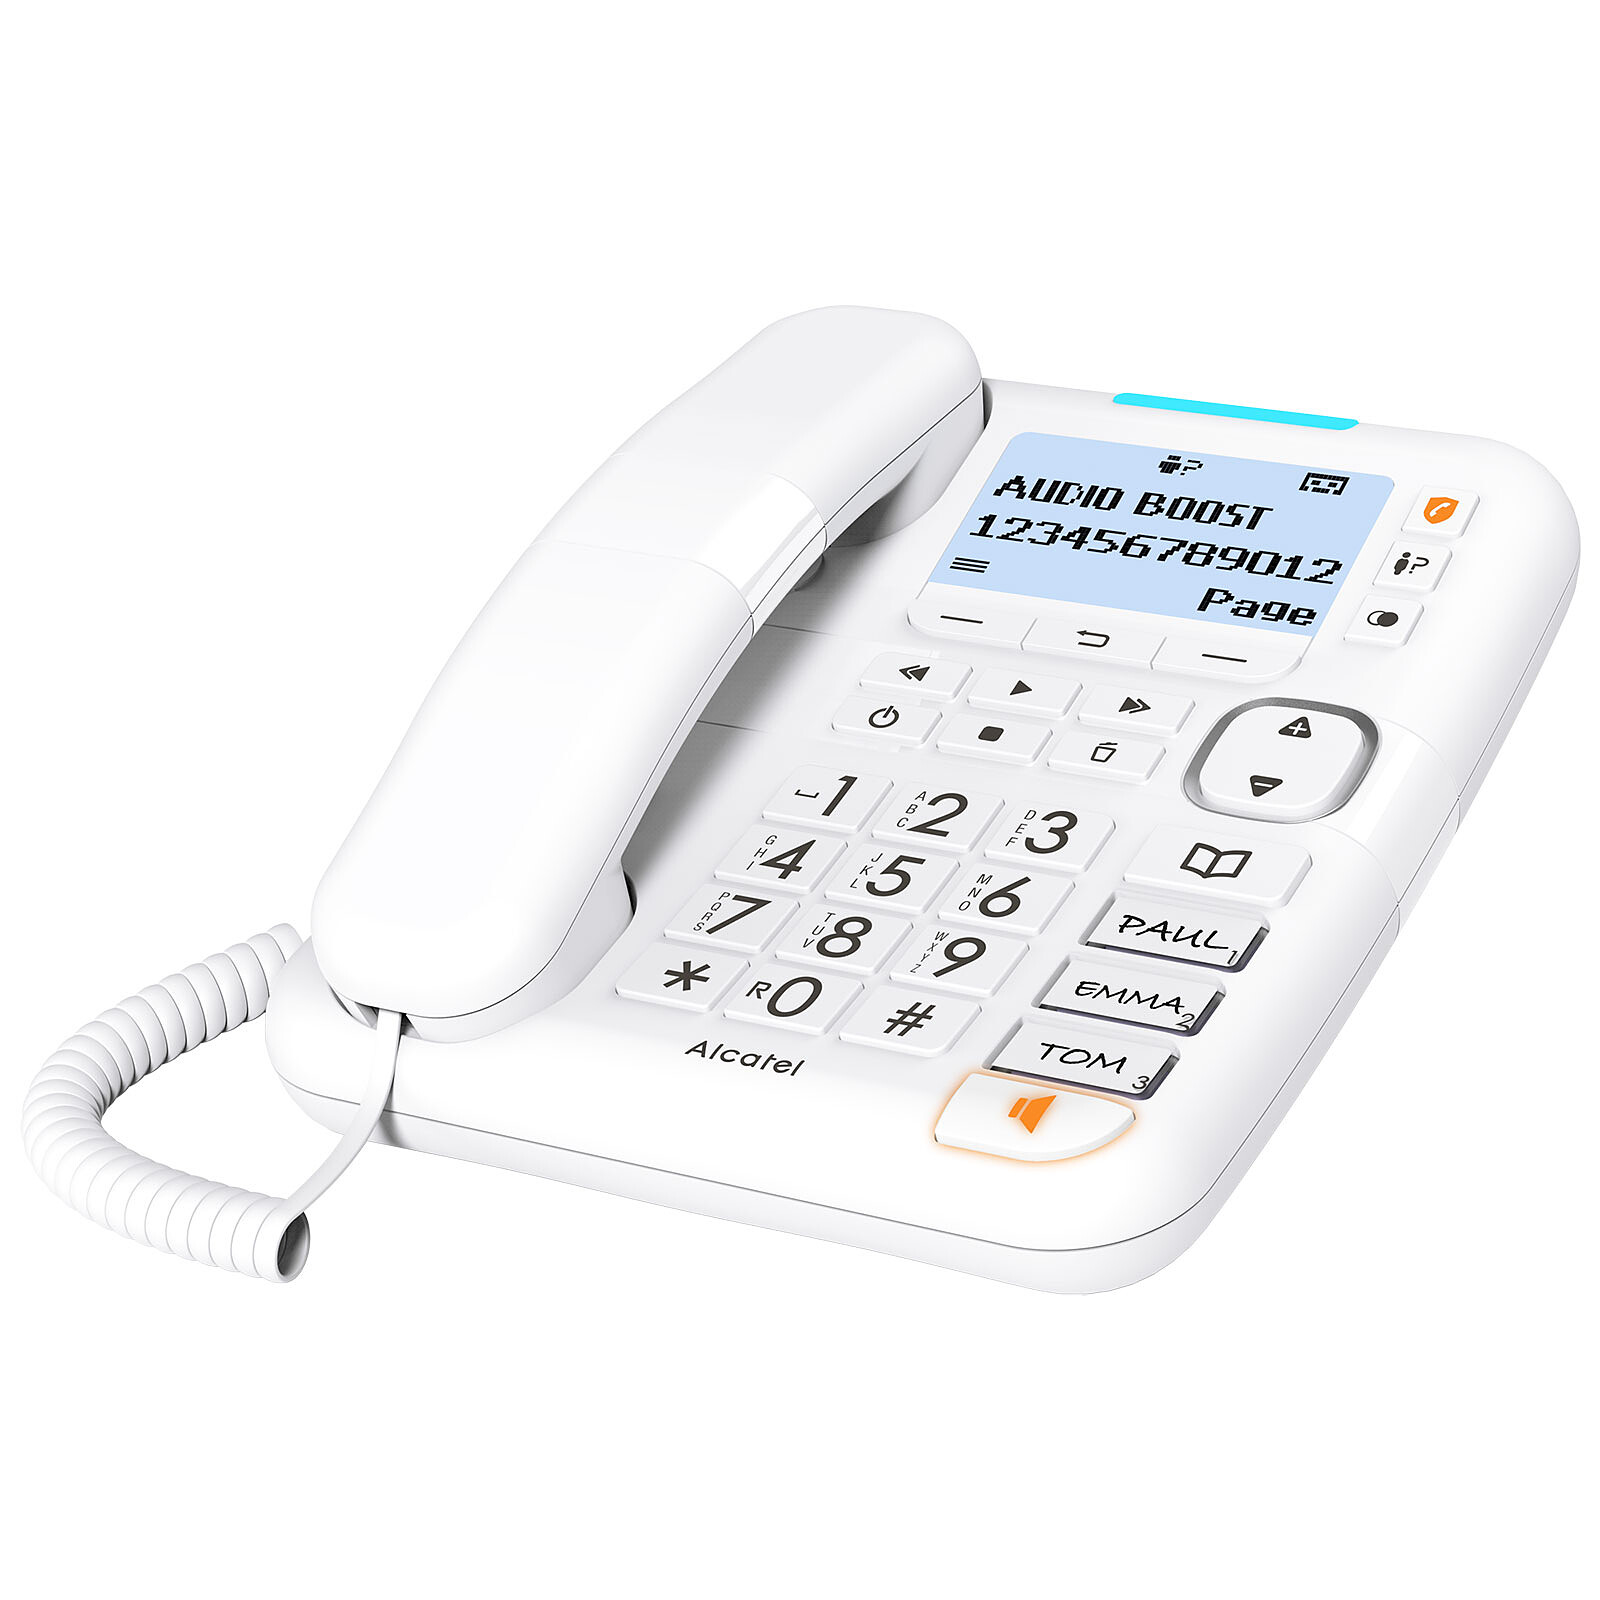 Alcatel XL785 Voice Trio Blanc - Téléphone sans fil - Garantie 3 ans LDLC